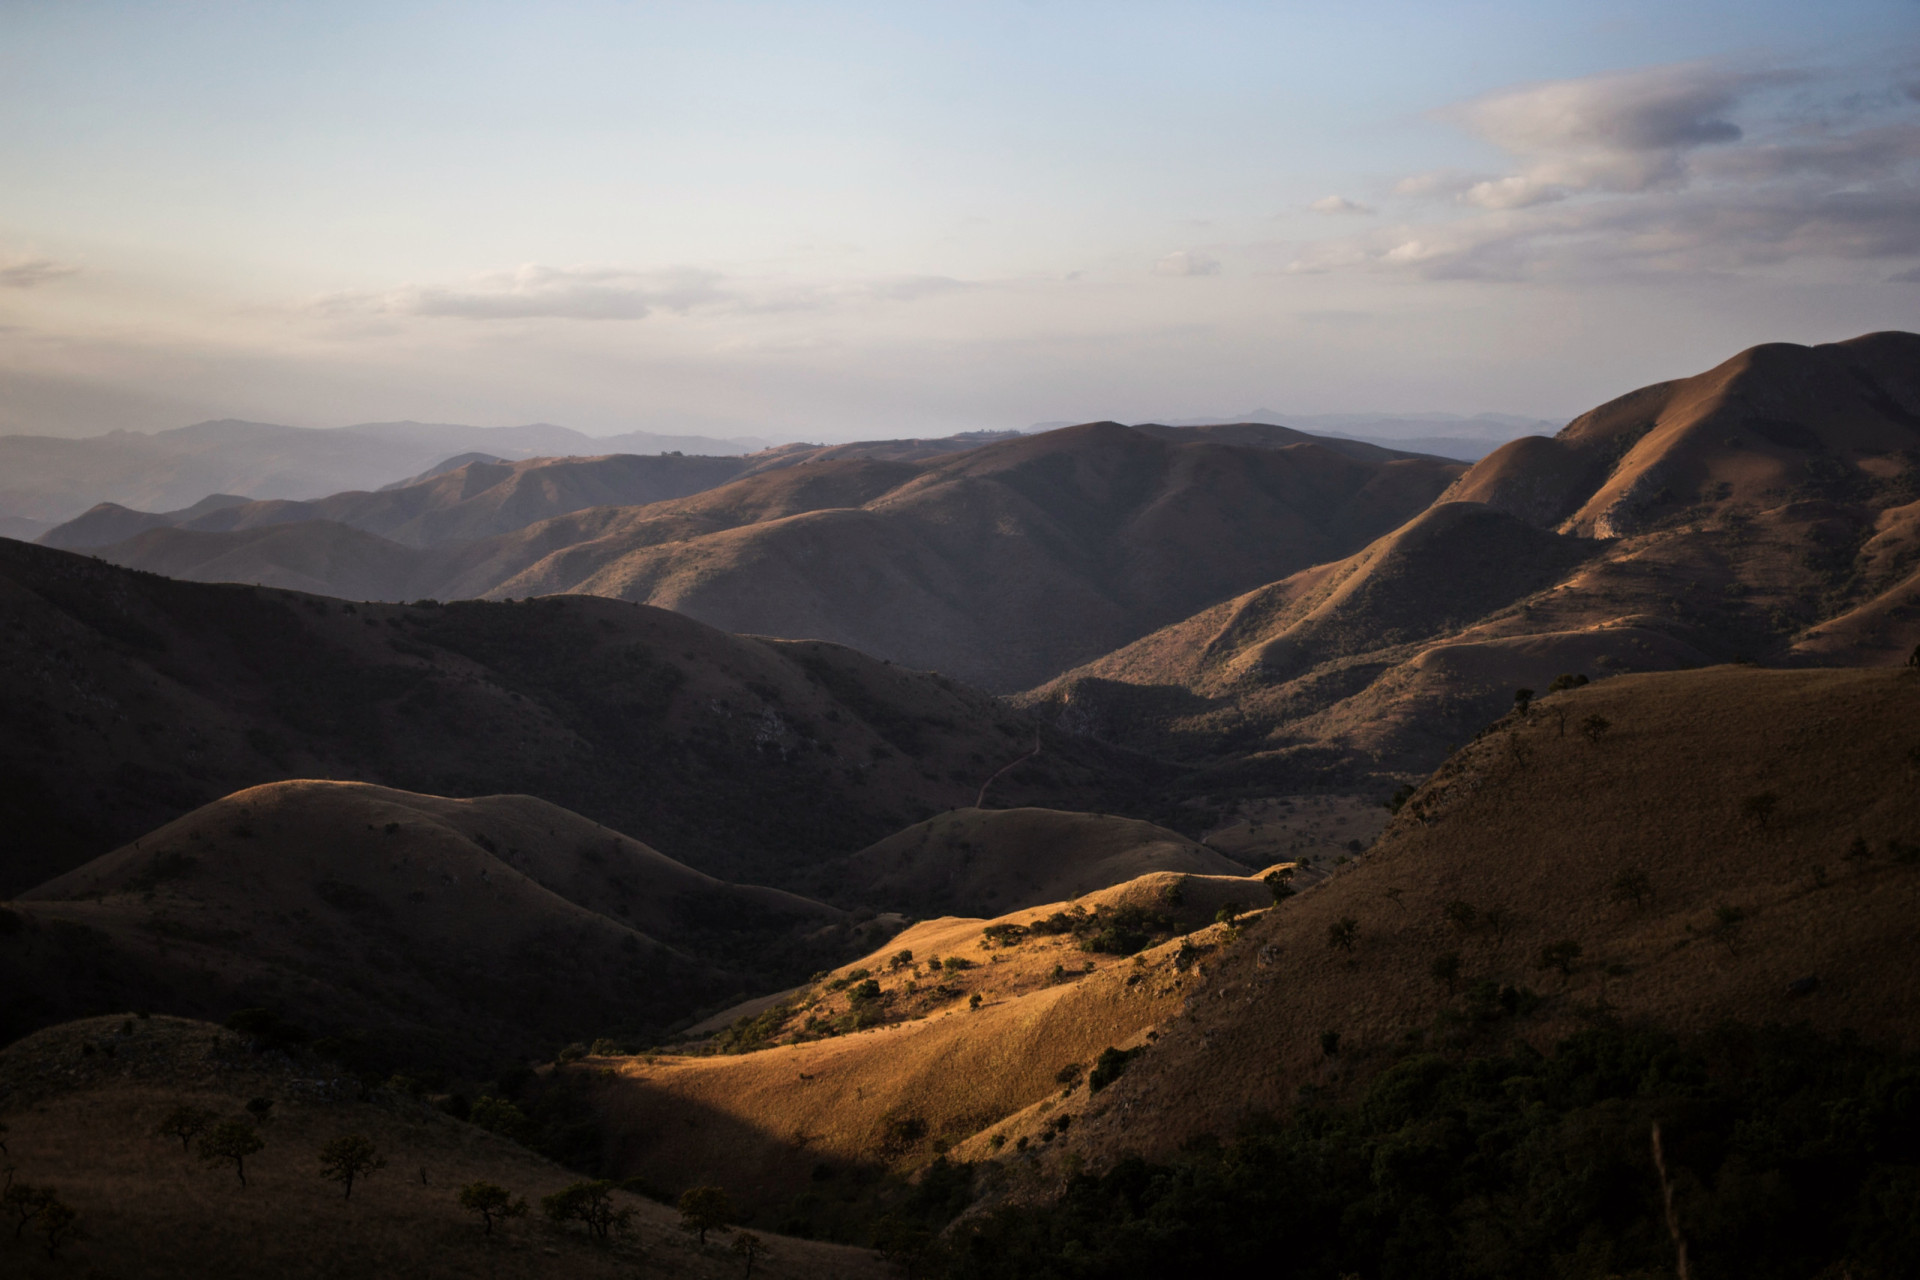 <p>Les montagnes de Barberton Makhonjwa, qui font partie de la ceinture de roches vertes de Barberton qui s'étend sur l'Afrique du Sud et le Swaziland, forment la plus ancienne chaîne de montagnes du monde. Cette chaîne, souvent décrite comme la "genèse de la vie", présente les plus anciennes roches exposées sur Terre, dont l'âge est estimé entre 3,2 et 3,6 milliards d'années.</p><p>Tu pourrais aussi aimer:<a href="https://www.starsinsider.com/n/435795?utm_source=msn.com&utm_medium=display&utm_campaign=referral_description&utm_content=648312fr-ca"> Affaire George Floyd : l'ancien policier reconnu coupable</a></p>